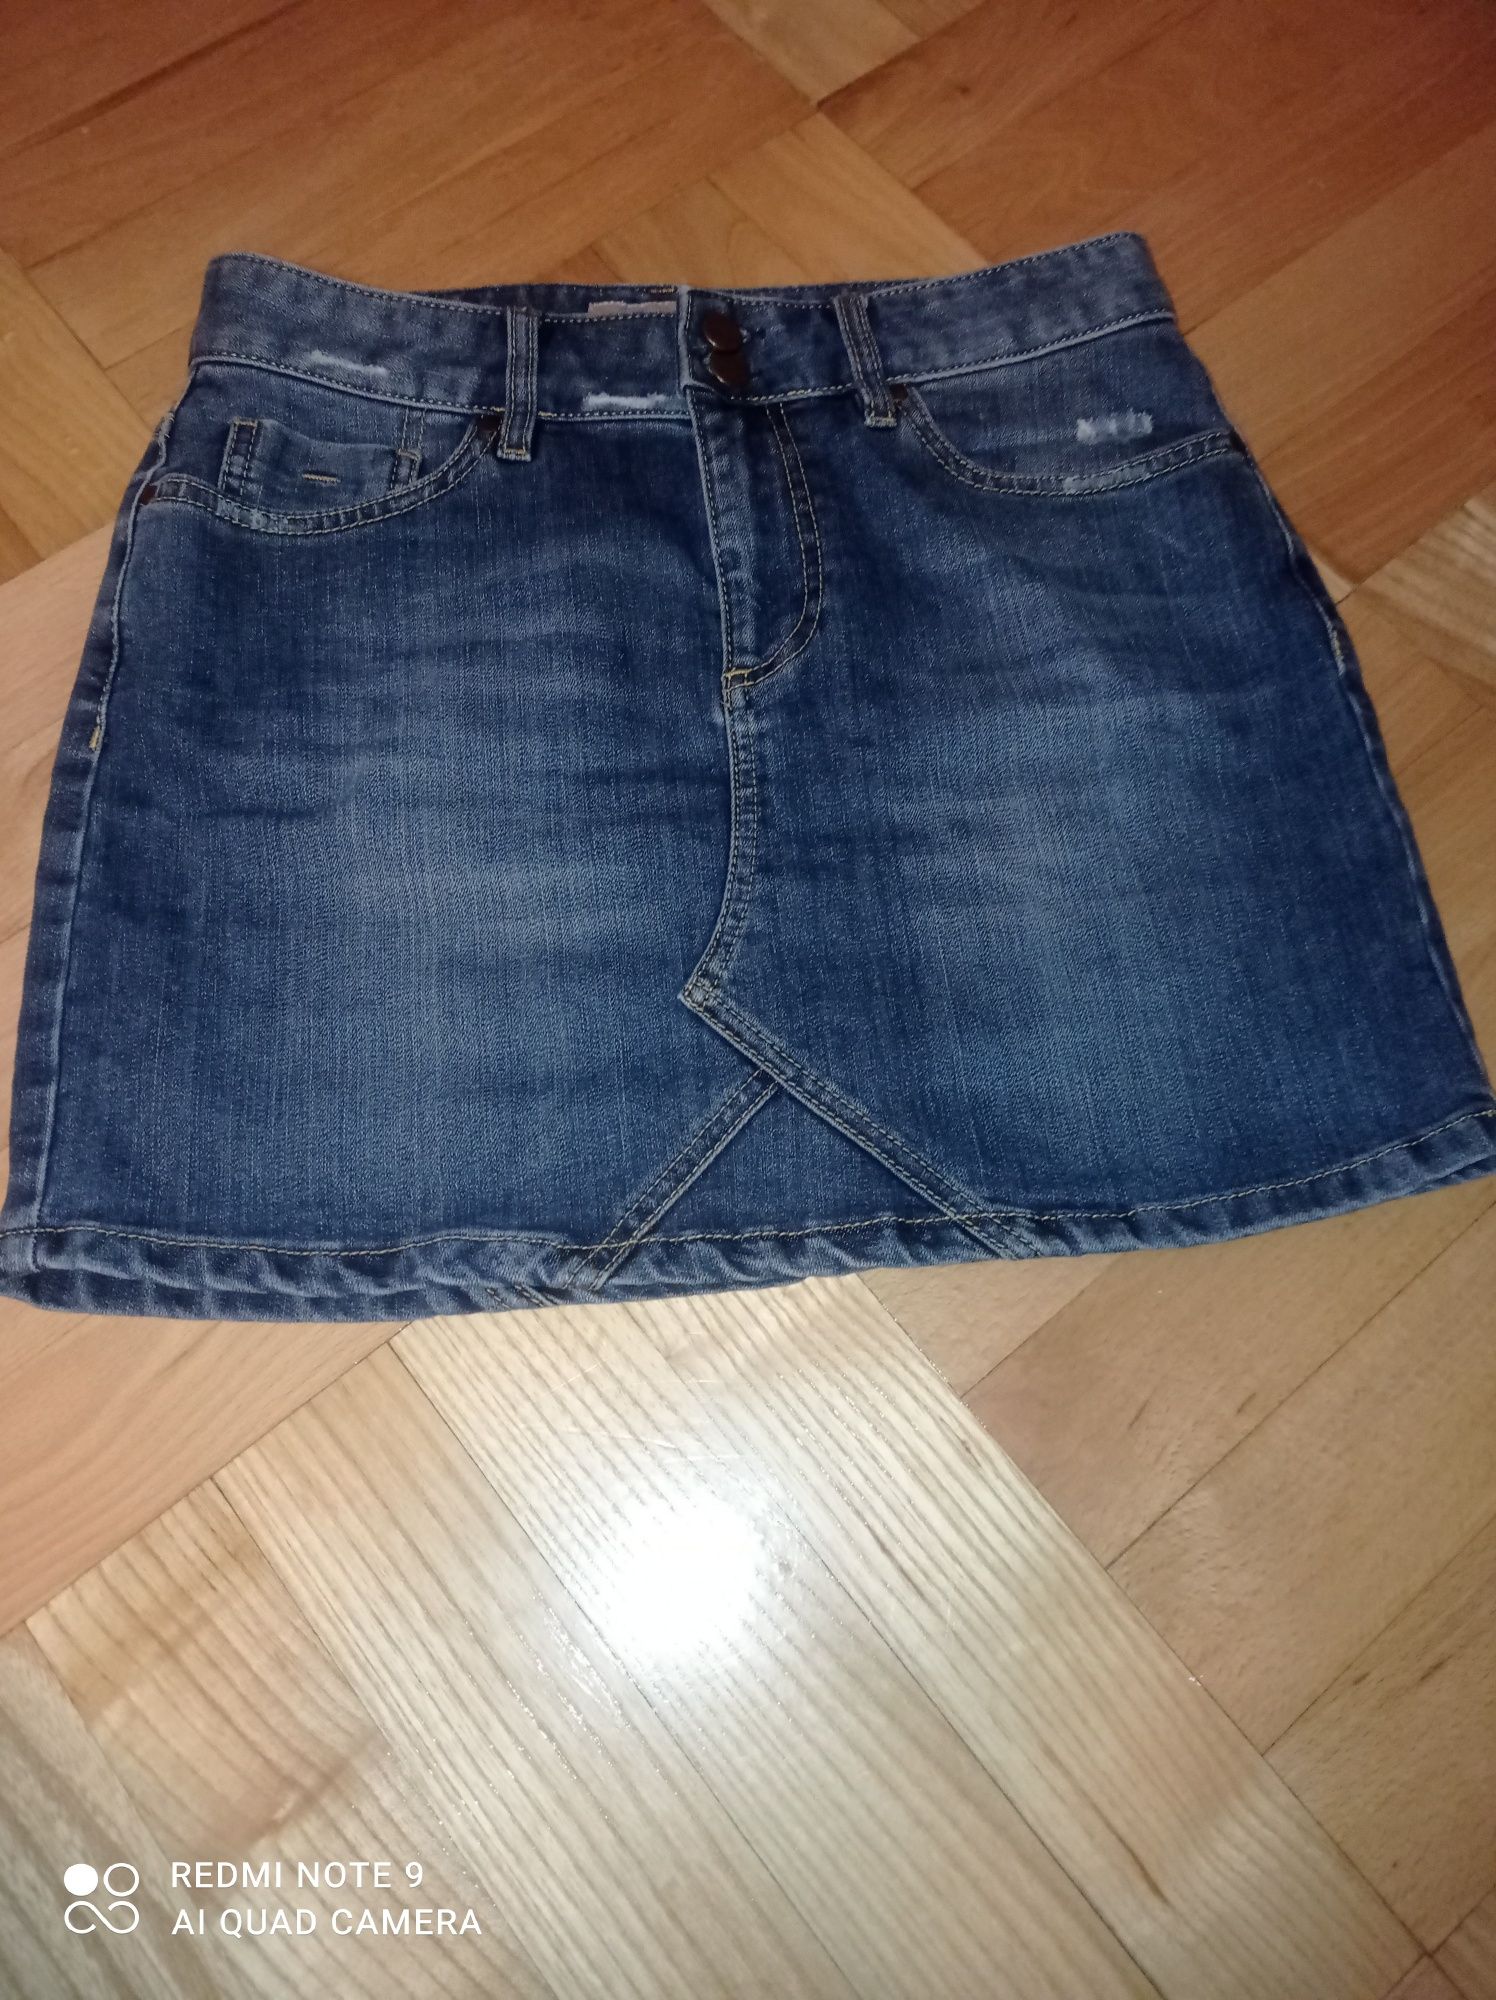 Modna spódniczka dżinsowa, mini jeans